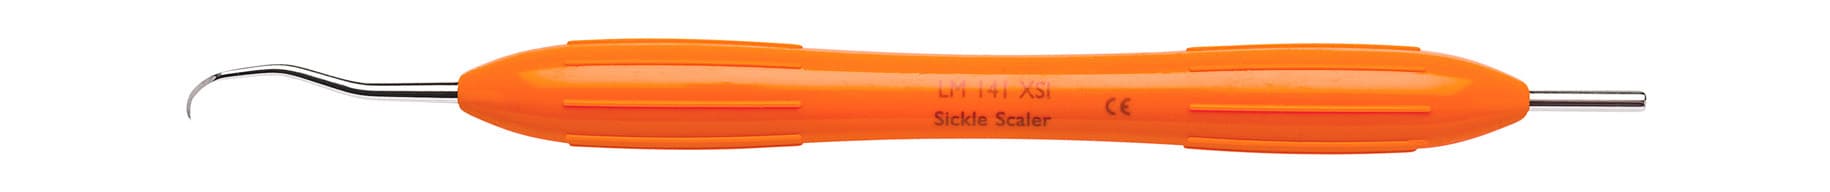 LM Sickel Scaler 141 XSI